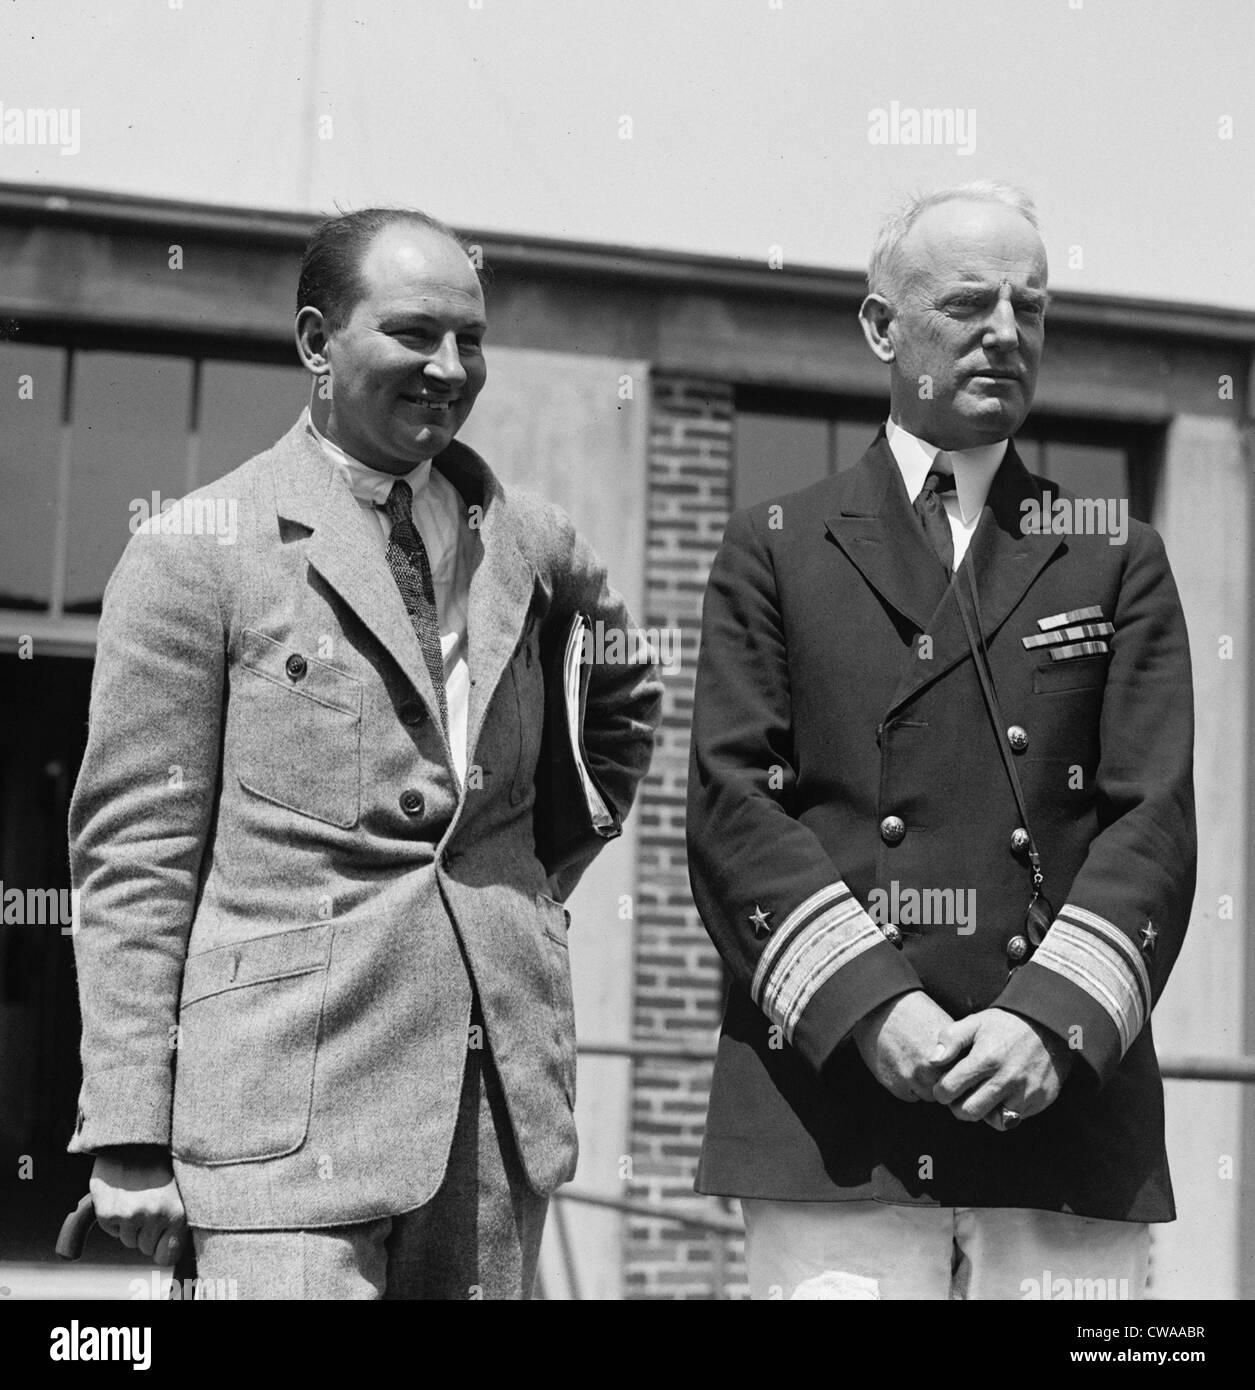 Anthony Herman Gerard Fokker (1890-1939), Olandese pioniere dell'aviazione, previsti piani per US Army Air Force dopo WW I. Egli è con Foto Stock